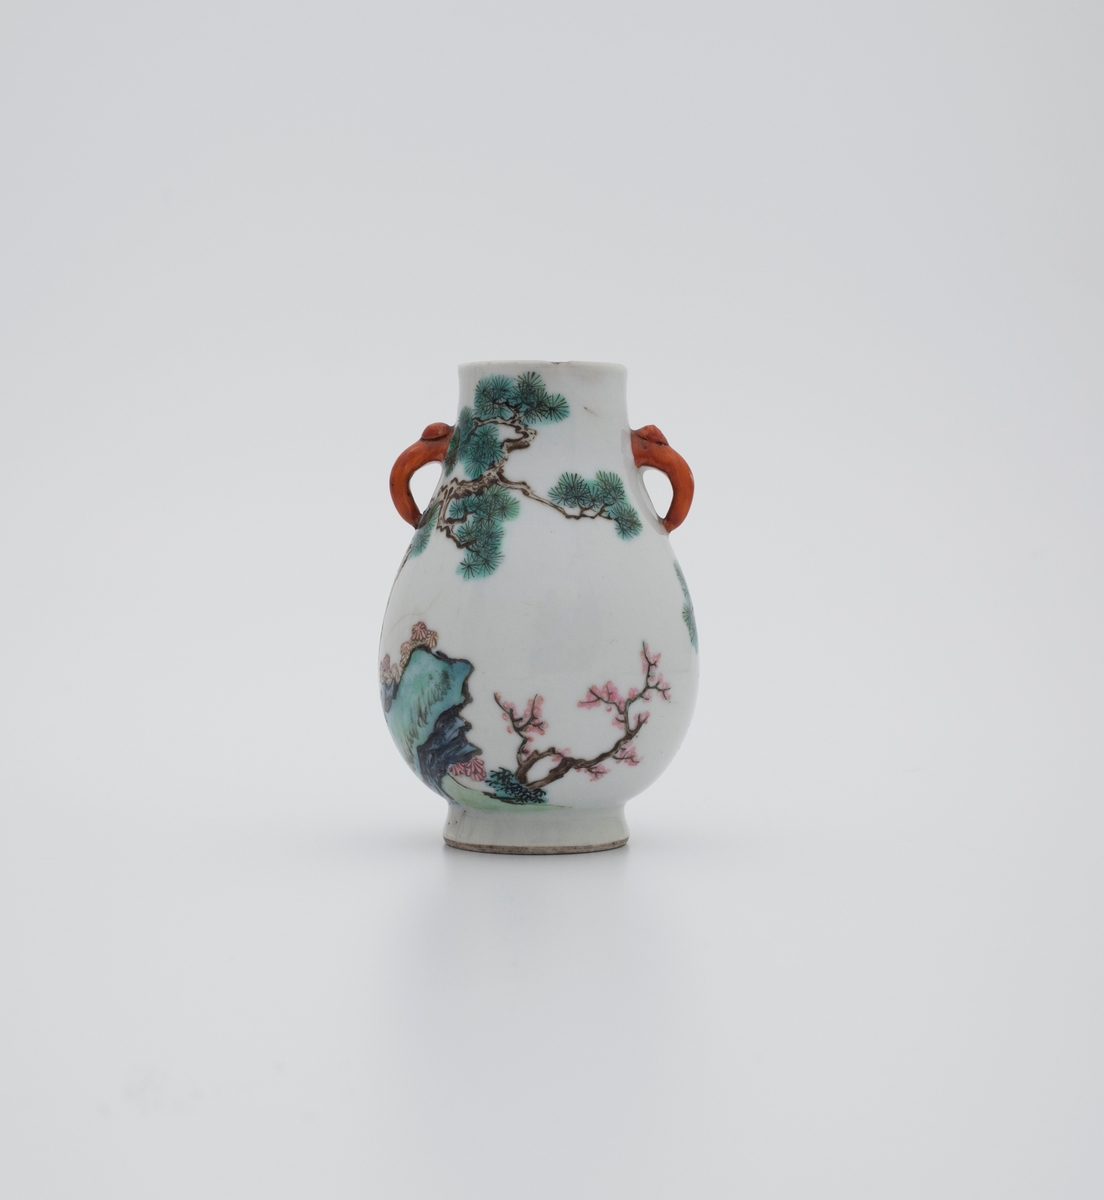 Famille rose vase med kirsebærblomst, furutrær, stein og traner. Tranen fremstilles ofte i kombinasjon med furu og stein, og er som oftest brukt som et symbol for langt liv. Håndtakene er utformet som elefanthoder.